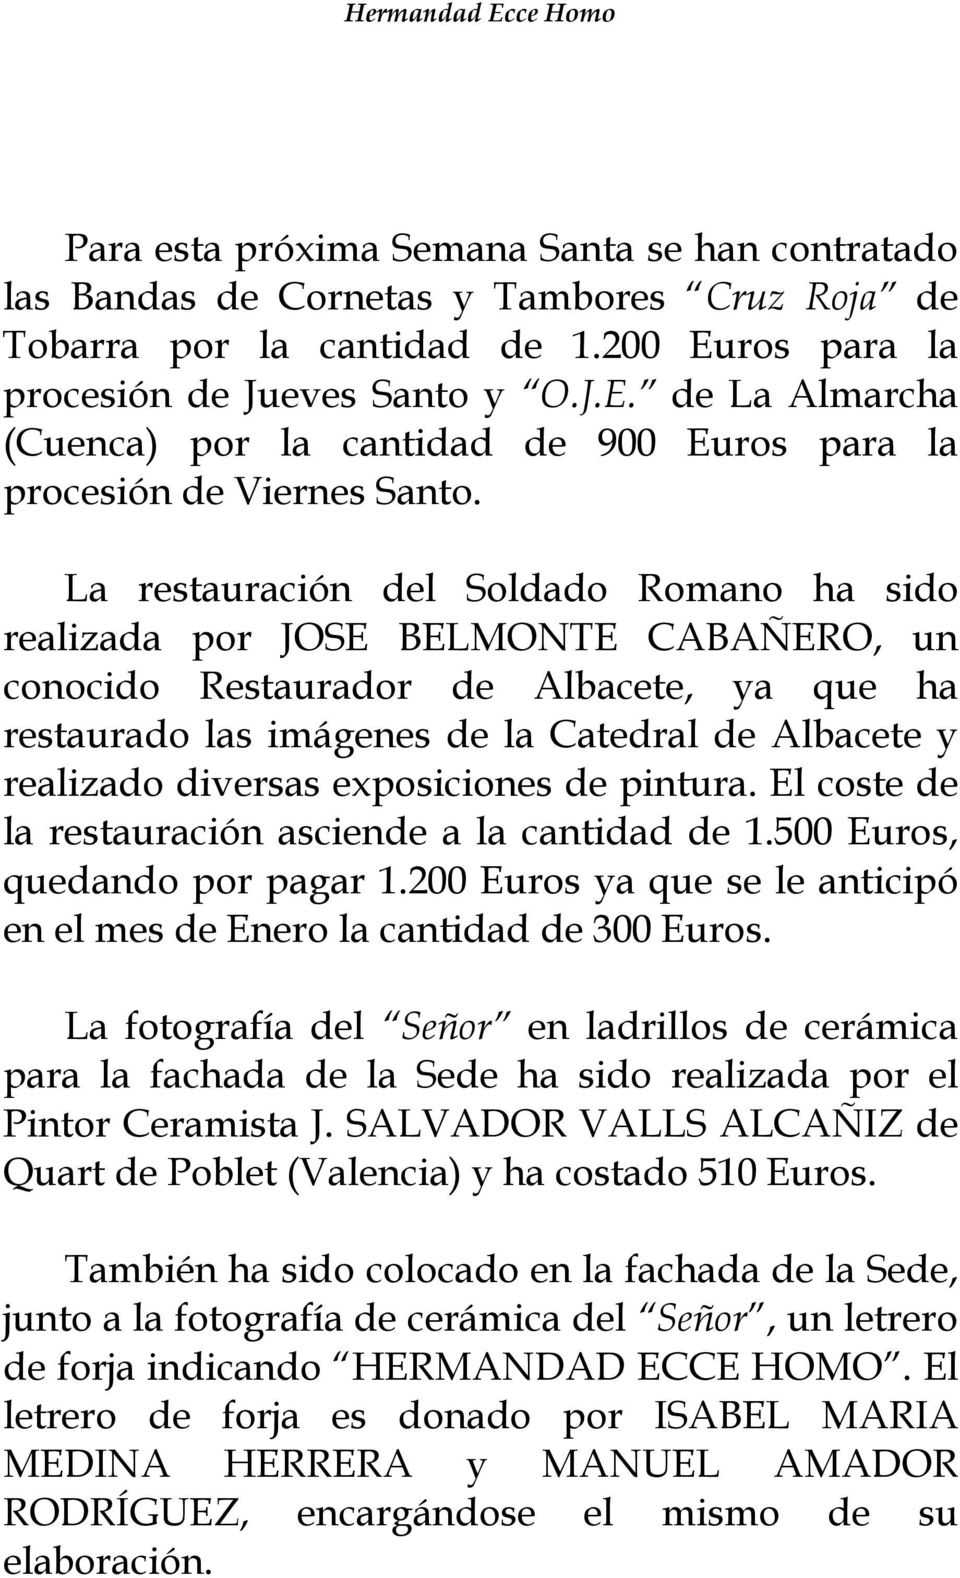 La restauración del Soldado Romano ha sido realizada por JOSE BELMONTE CABAÑERO, un conocido Restaurador de Albacete, ya que ha restaurado las imágenes de la Catedral de Albacete y realizado diversas